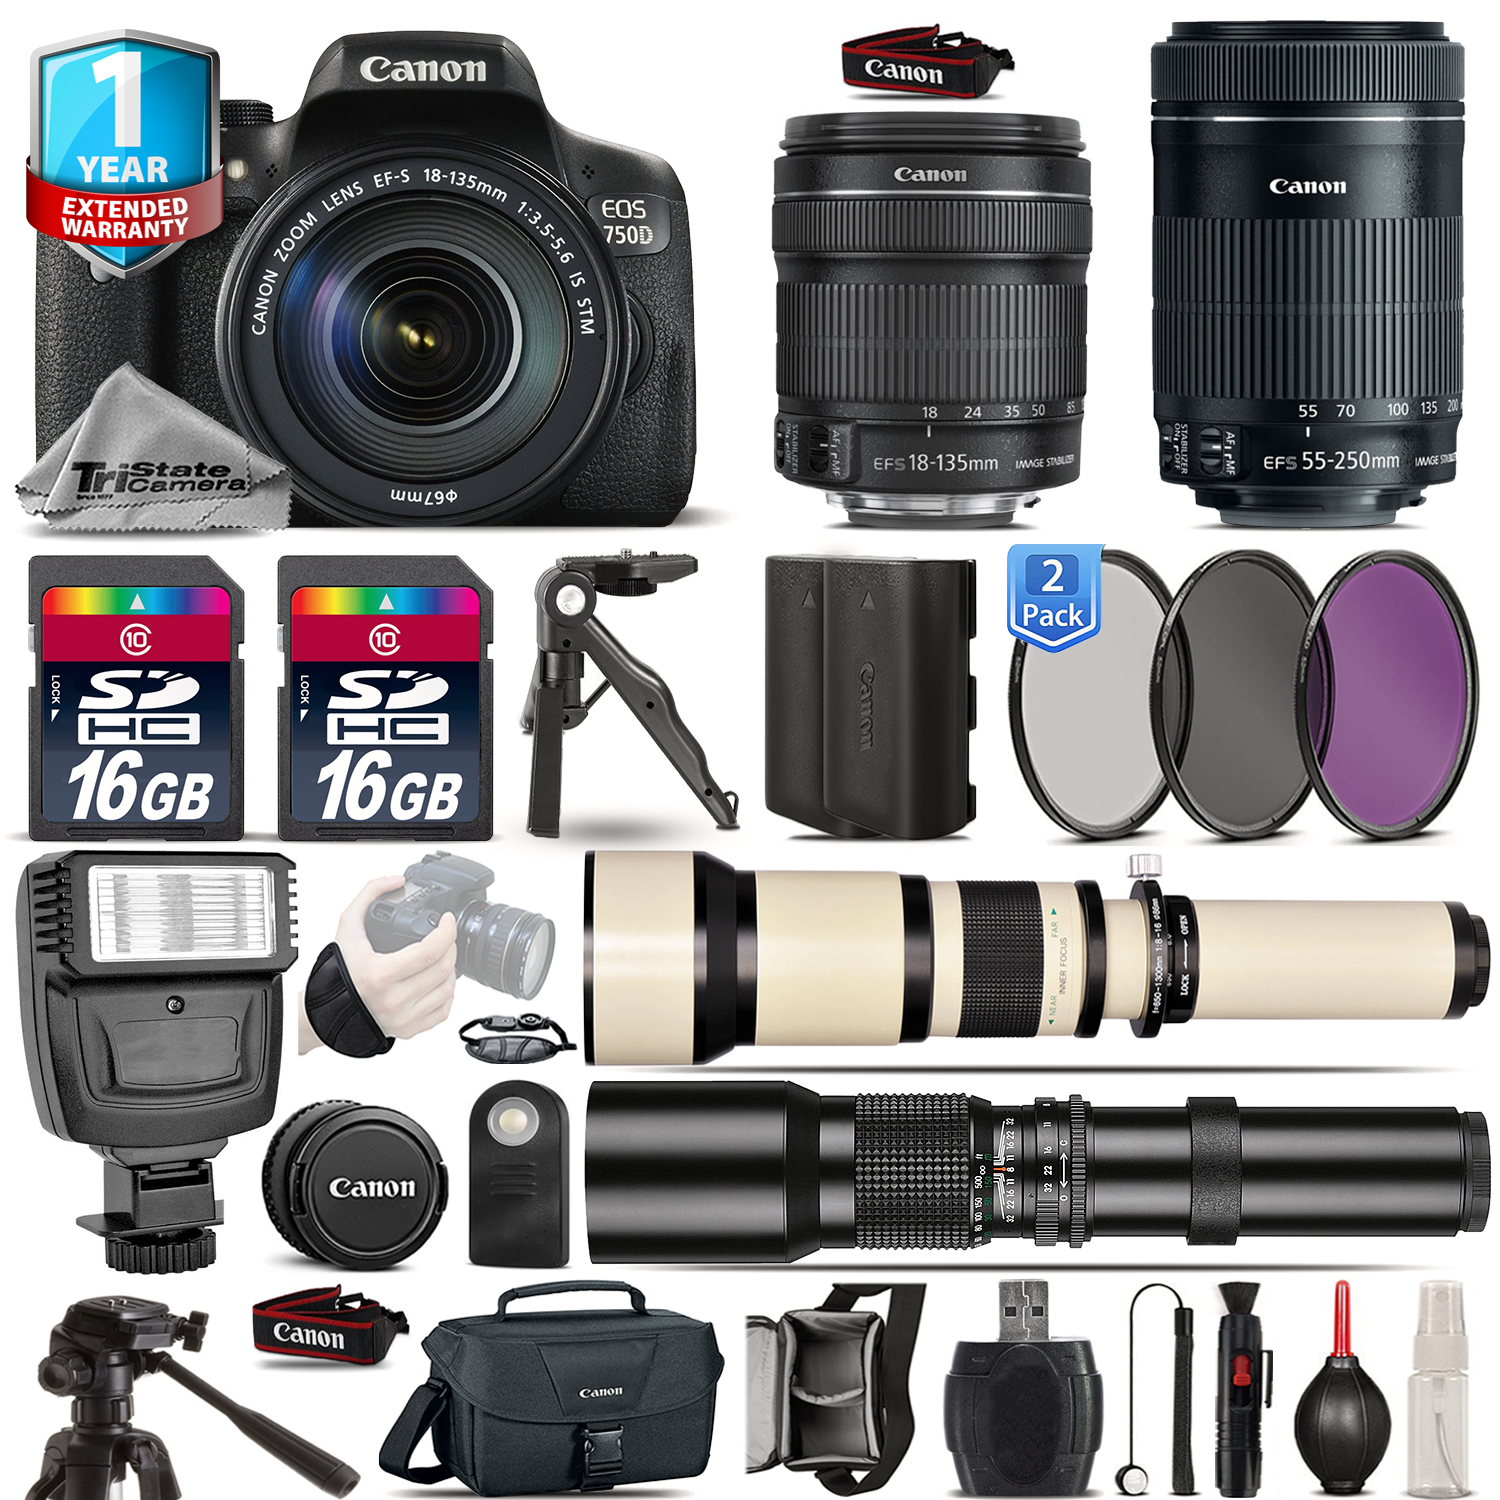 EOS Rebel 750D Camera + 18-135mm IS + 55-200mm + EXT BATT + 1yr Warranty *FREE SHIPPING*